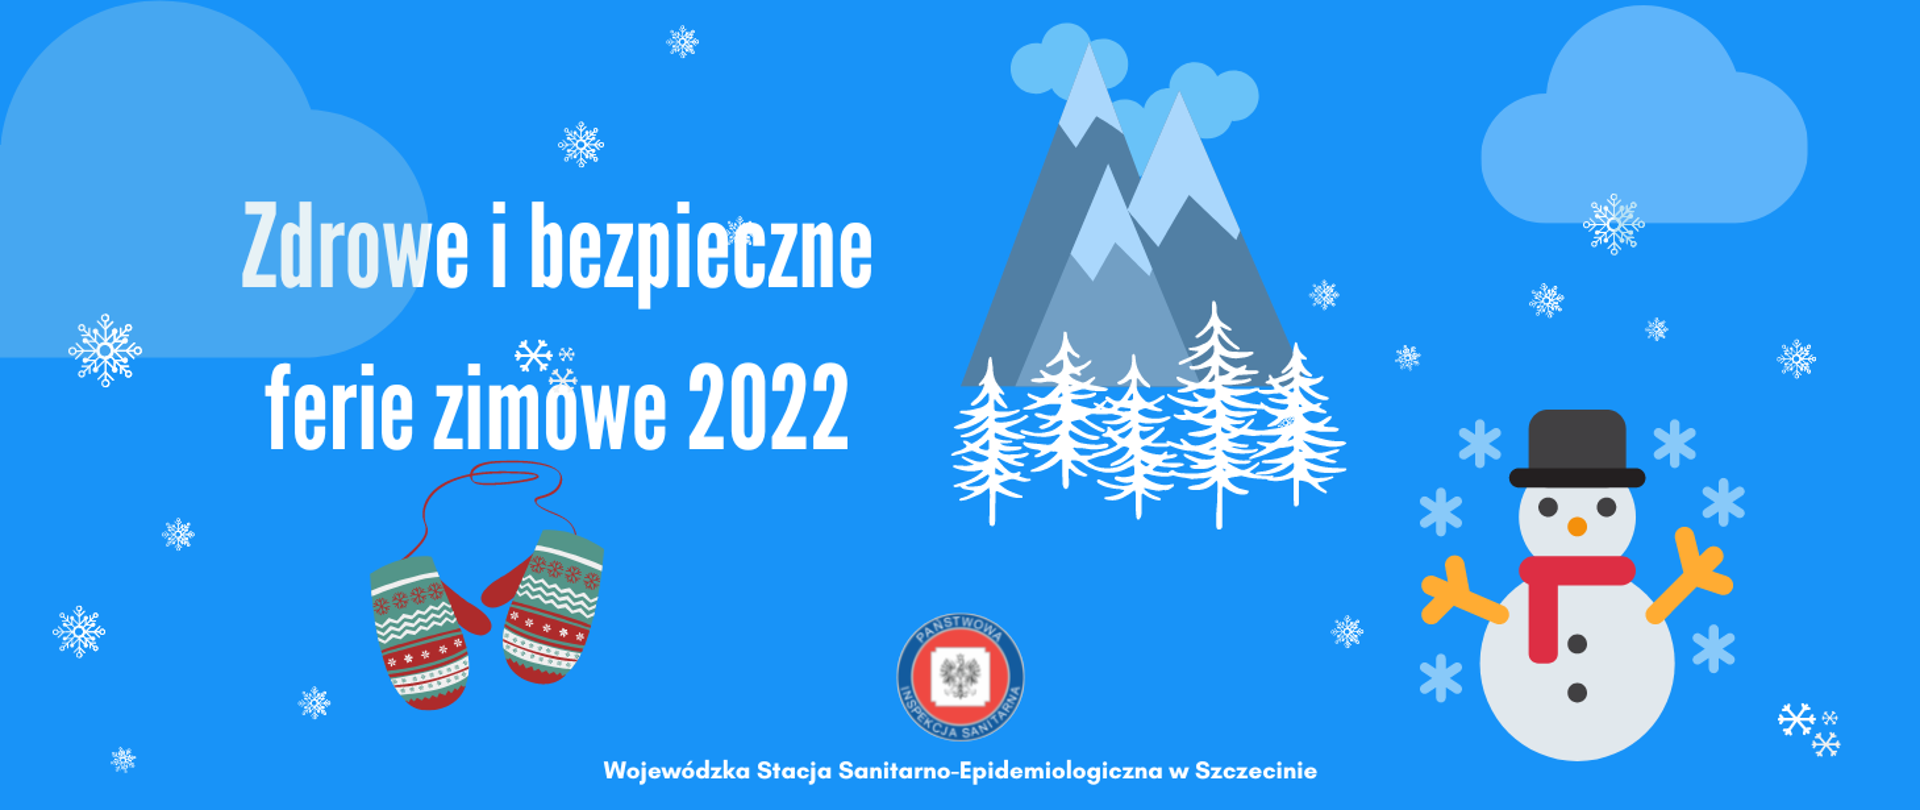 Zdrowe i bezpieczne ferie zimowe 2022 - grafika z bałwankiem, górami i rękawicami